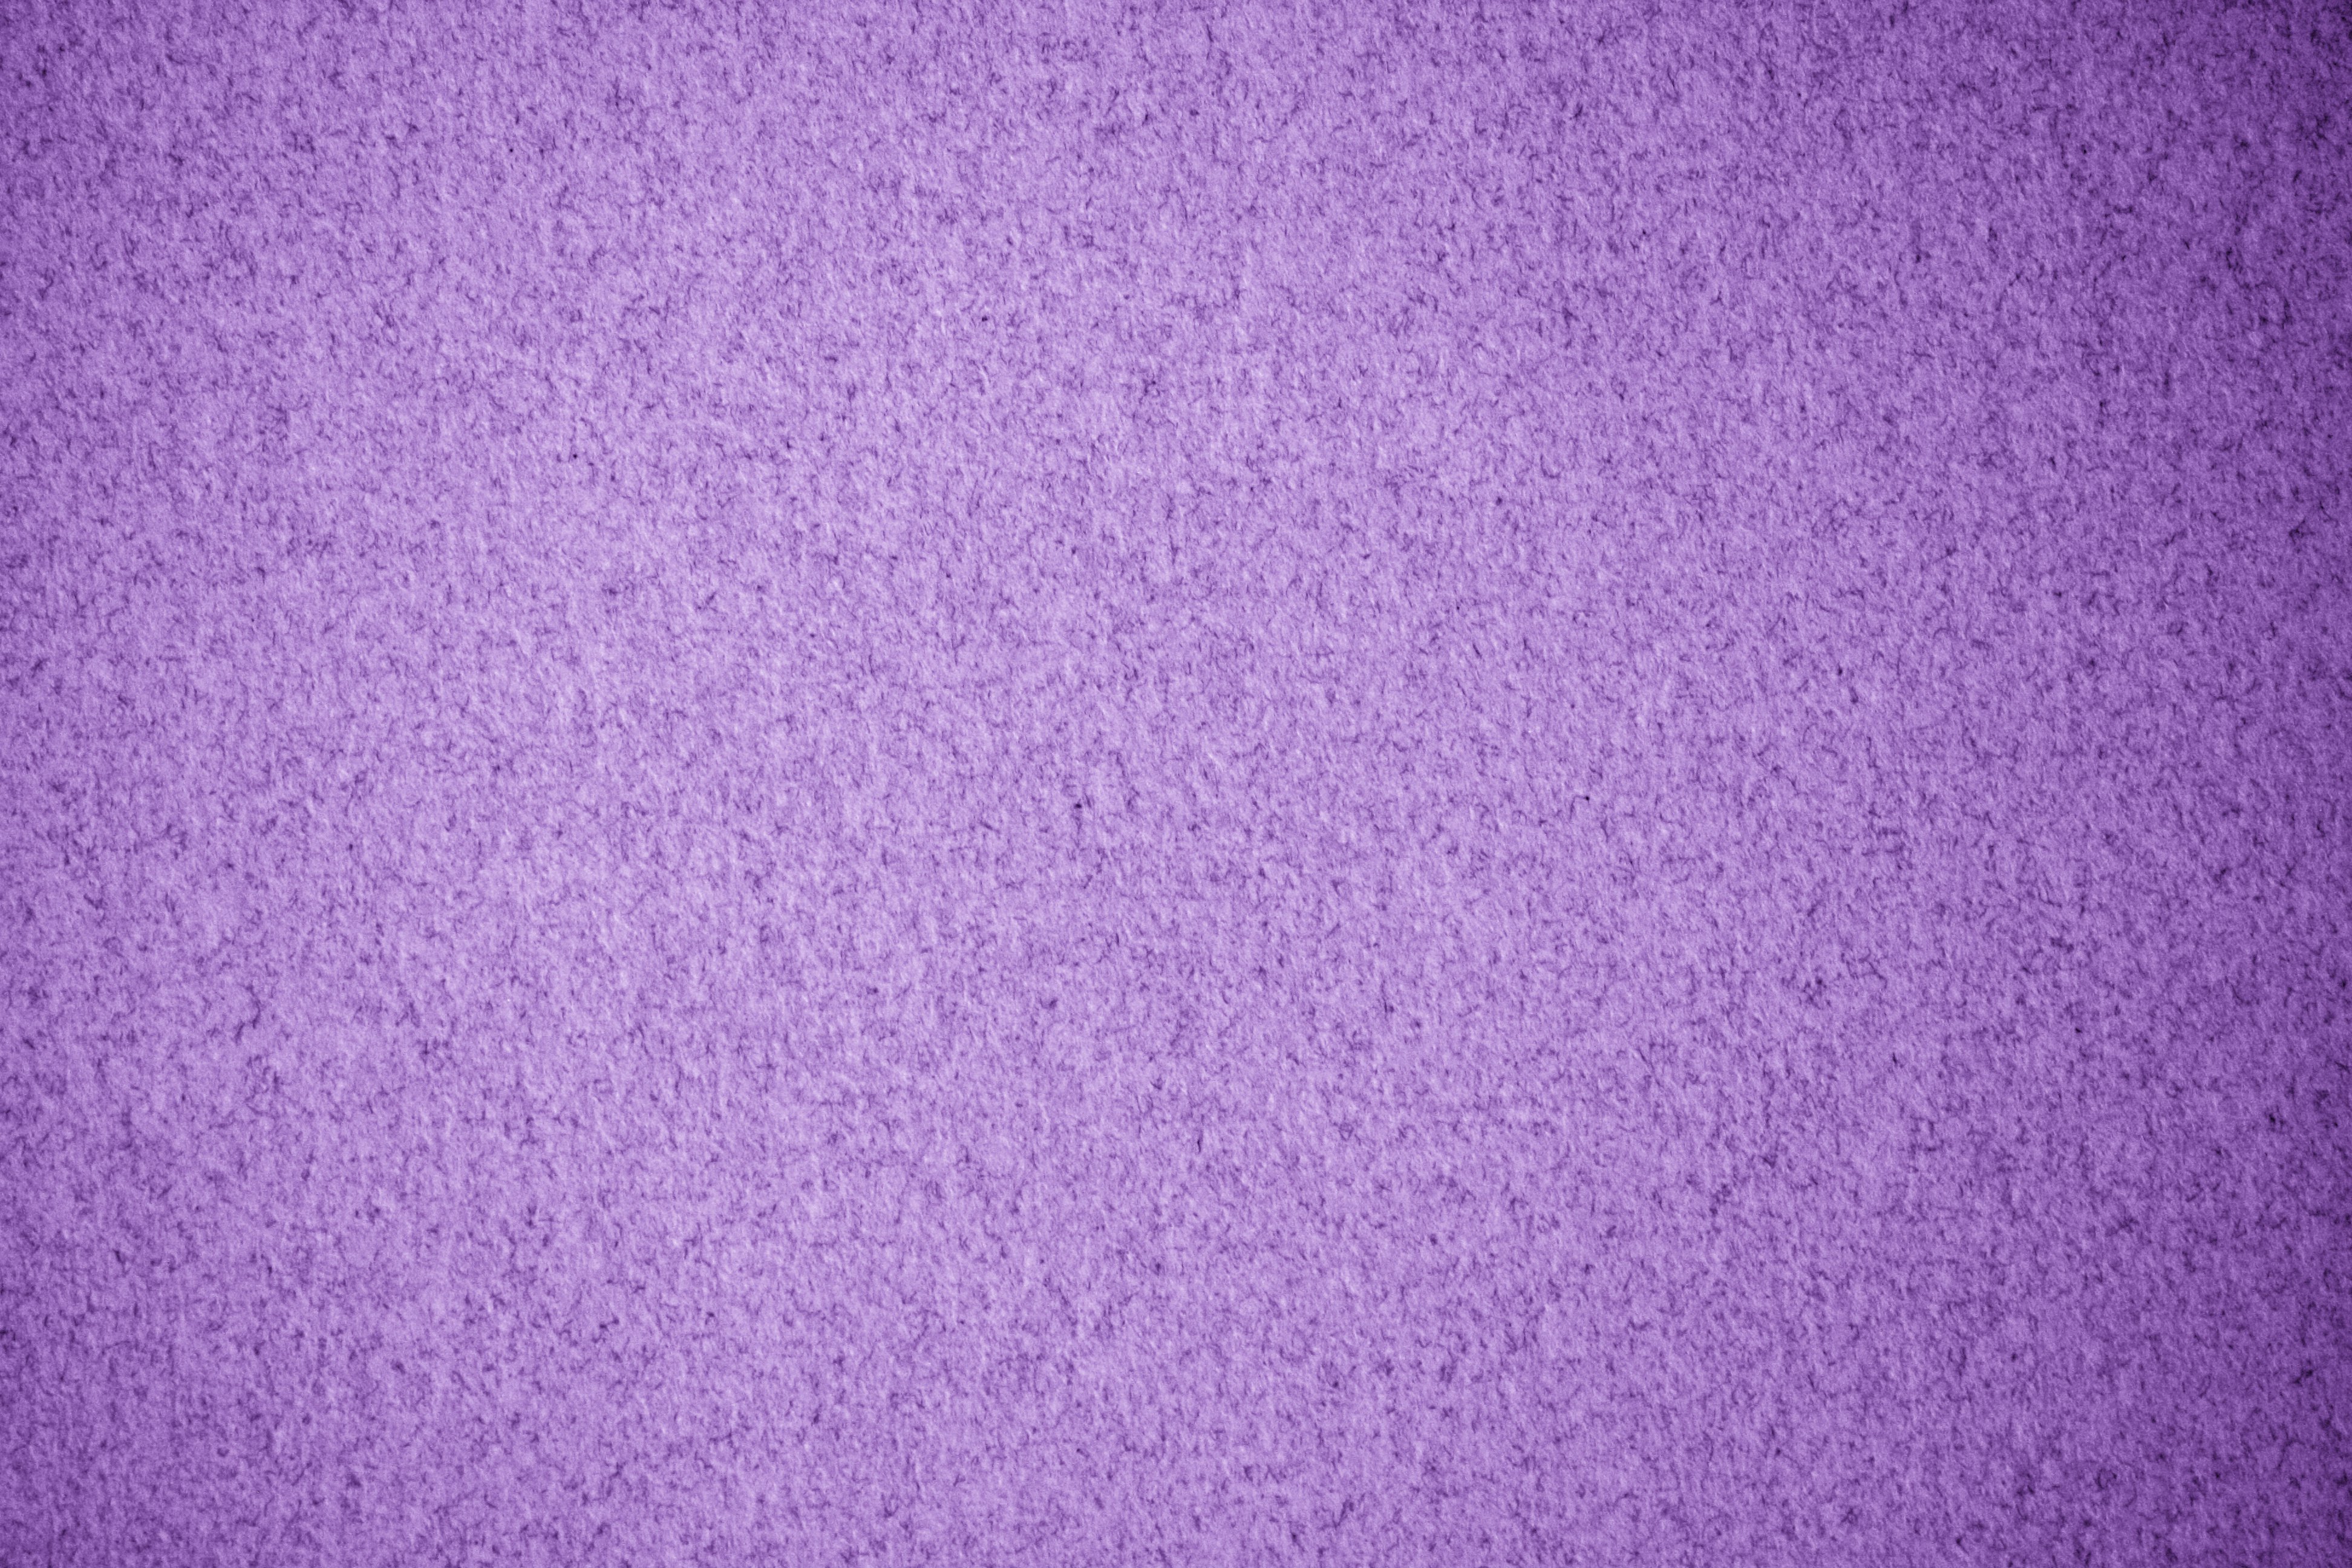 Purple Speckled Paper Texture Picture Free Photograph Photos Public